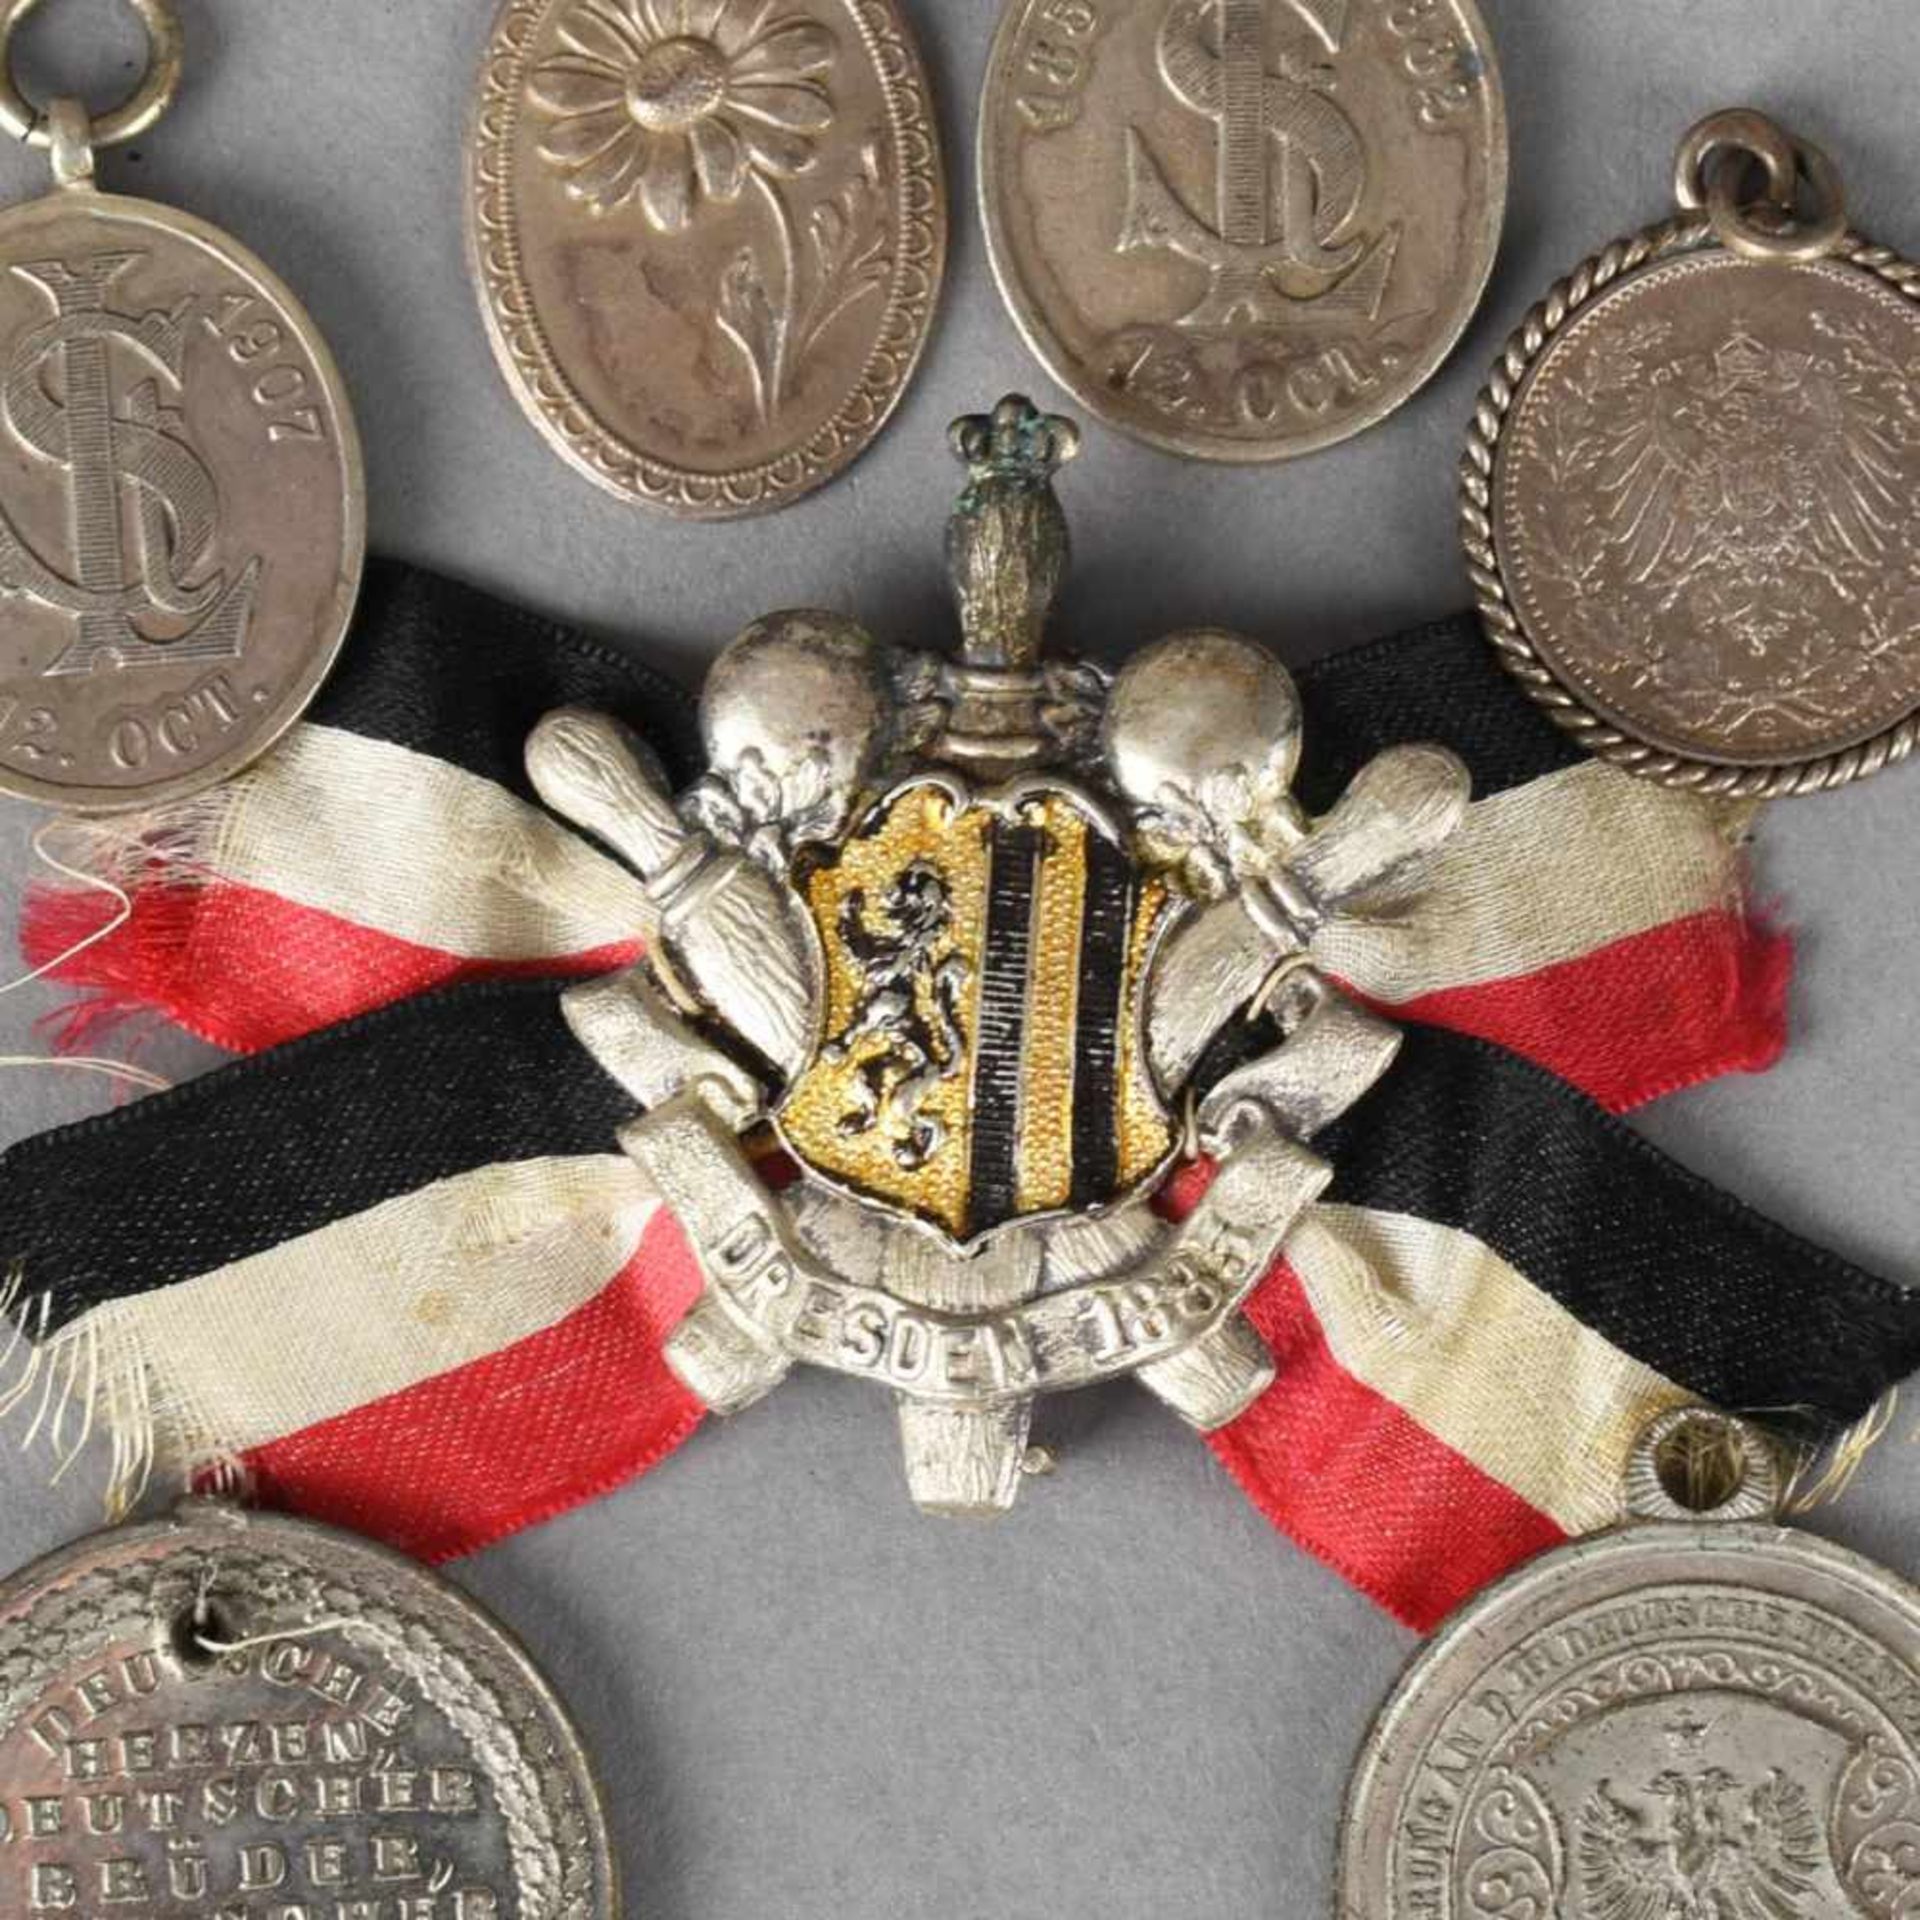 Historische Anhänger und Abzeichen insg. 7 Stück, dabei: 1 x Kegel-Abzeichen Dresden 1885, mit